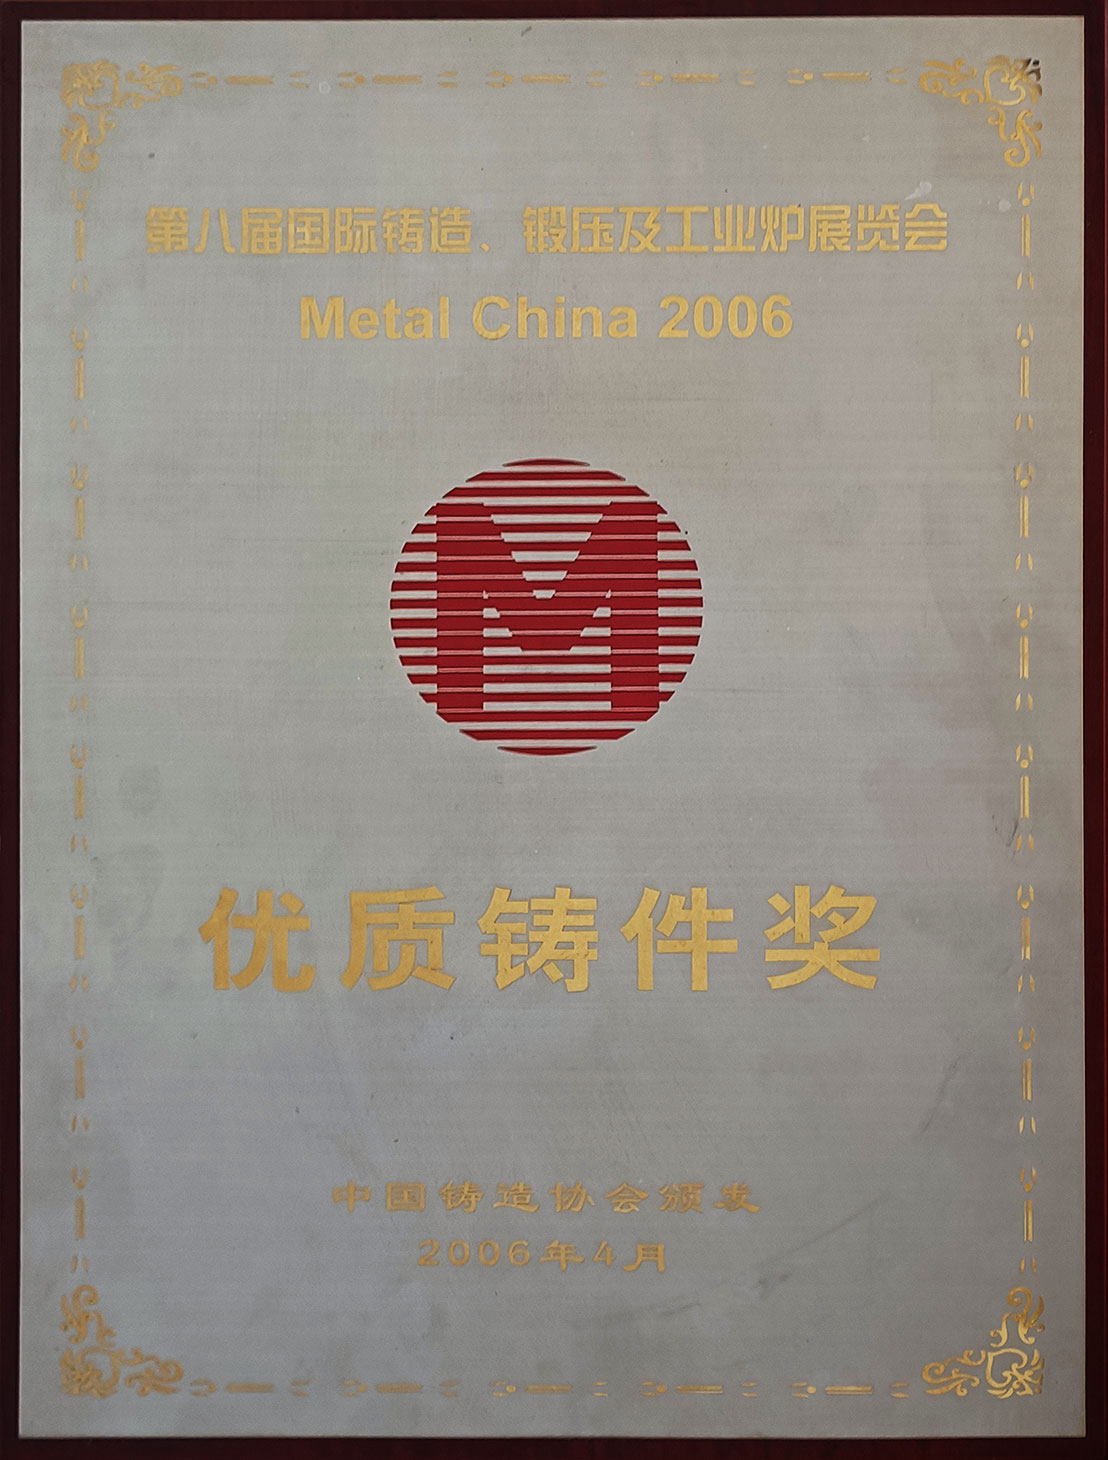 优质铸件奖中国铸造协会